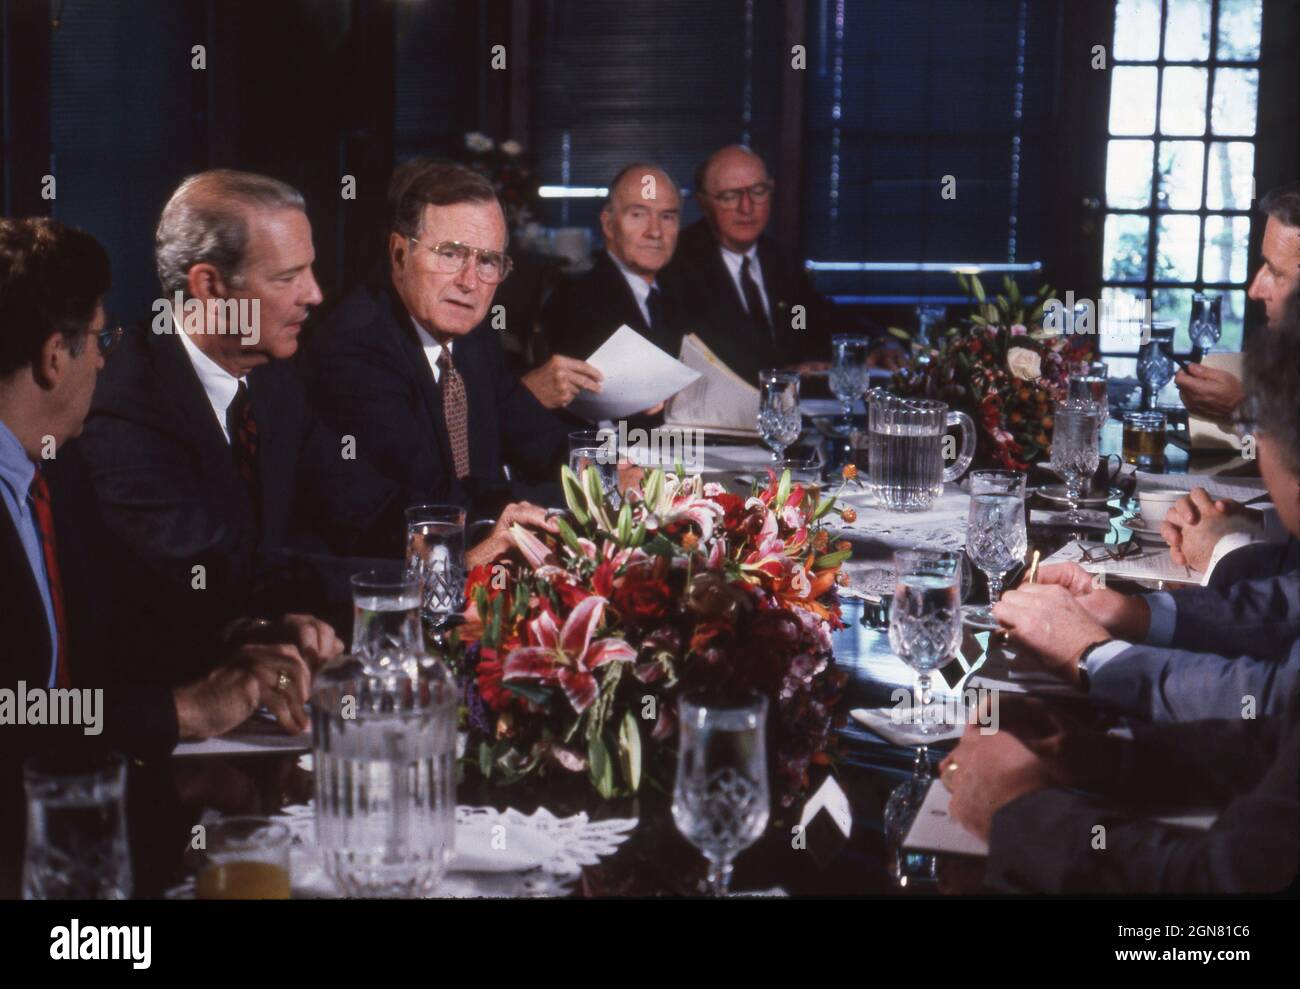 Houston, Texas, USA, Juli 1990: US-Präsident GEORGE W. BUSH (c) und Außenminister JAMES BAKER (l) veranstalten während des Wirtschaftsgipfels für Industrieländer an der Universität von Reis ein Arbeitsessen mit anderen Weltführern. ©Bob Daemmrich Stockfoto